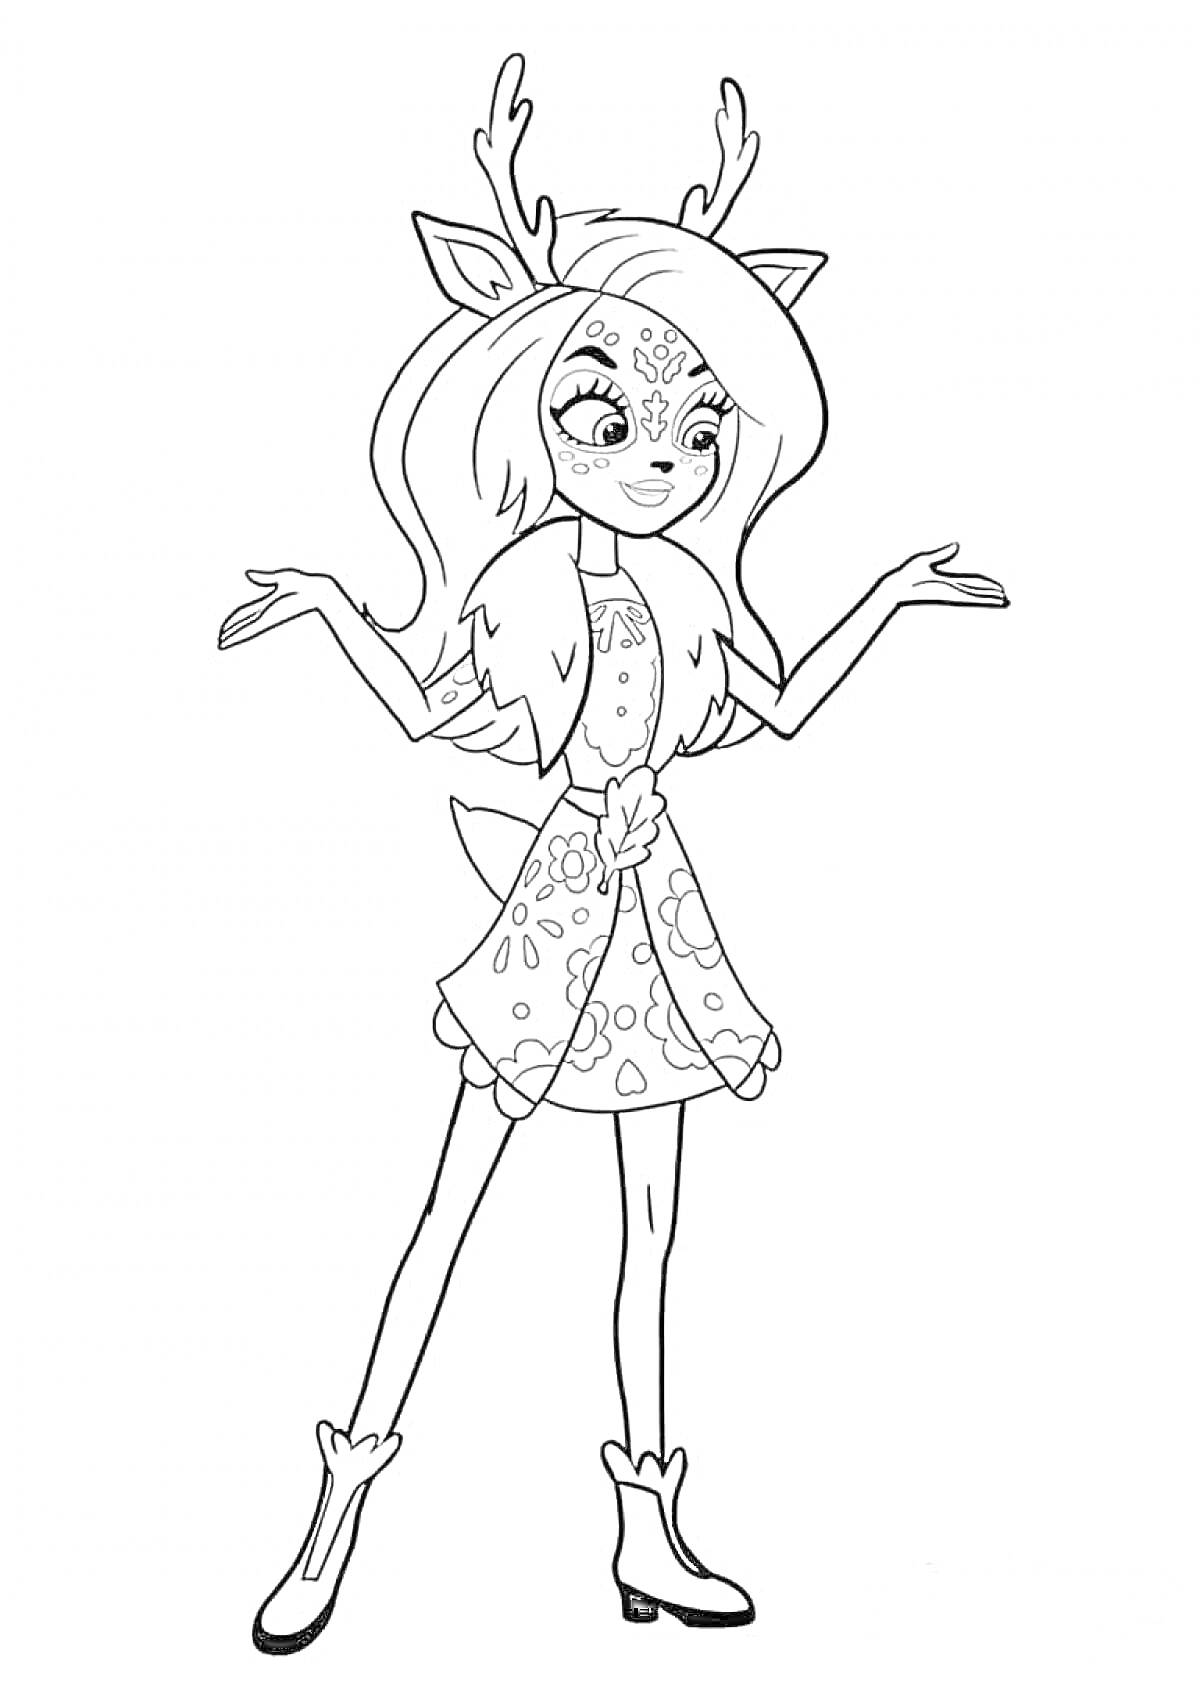 Раскраска Девочка-олень из Энчантималс с длинными волосами, в платье с цветами и сапожках